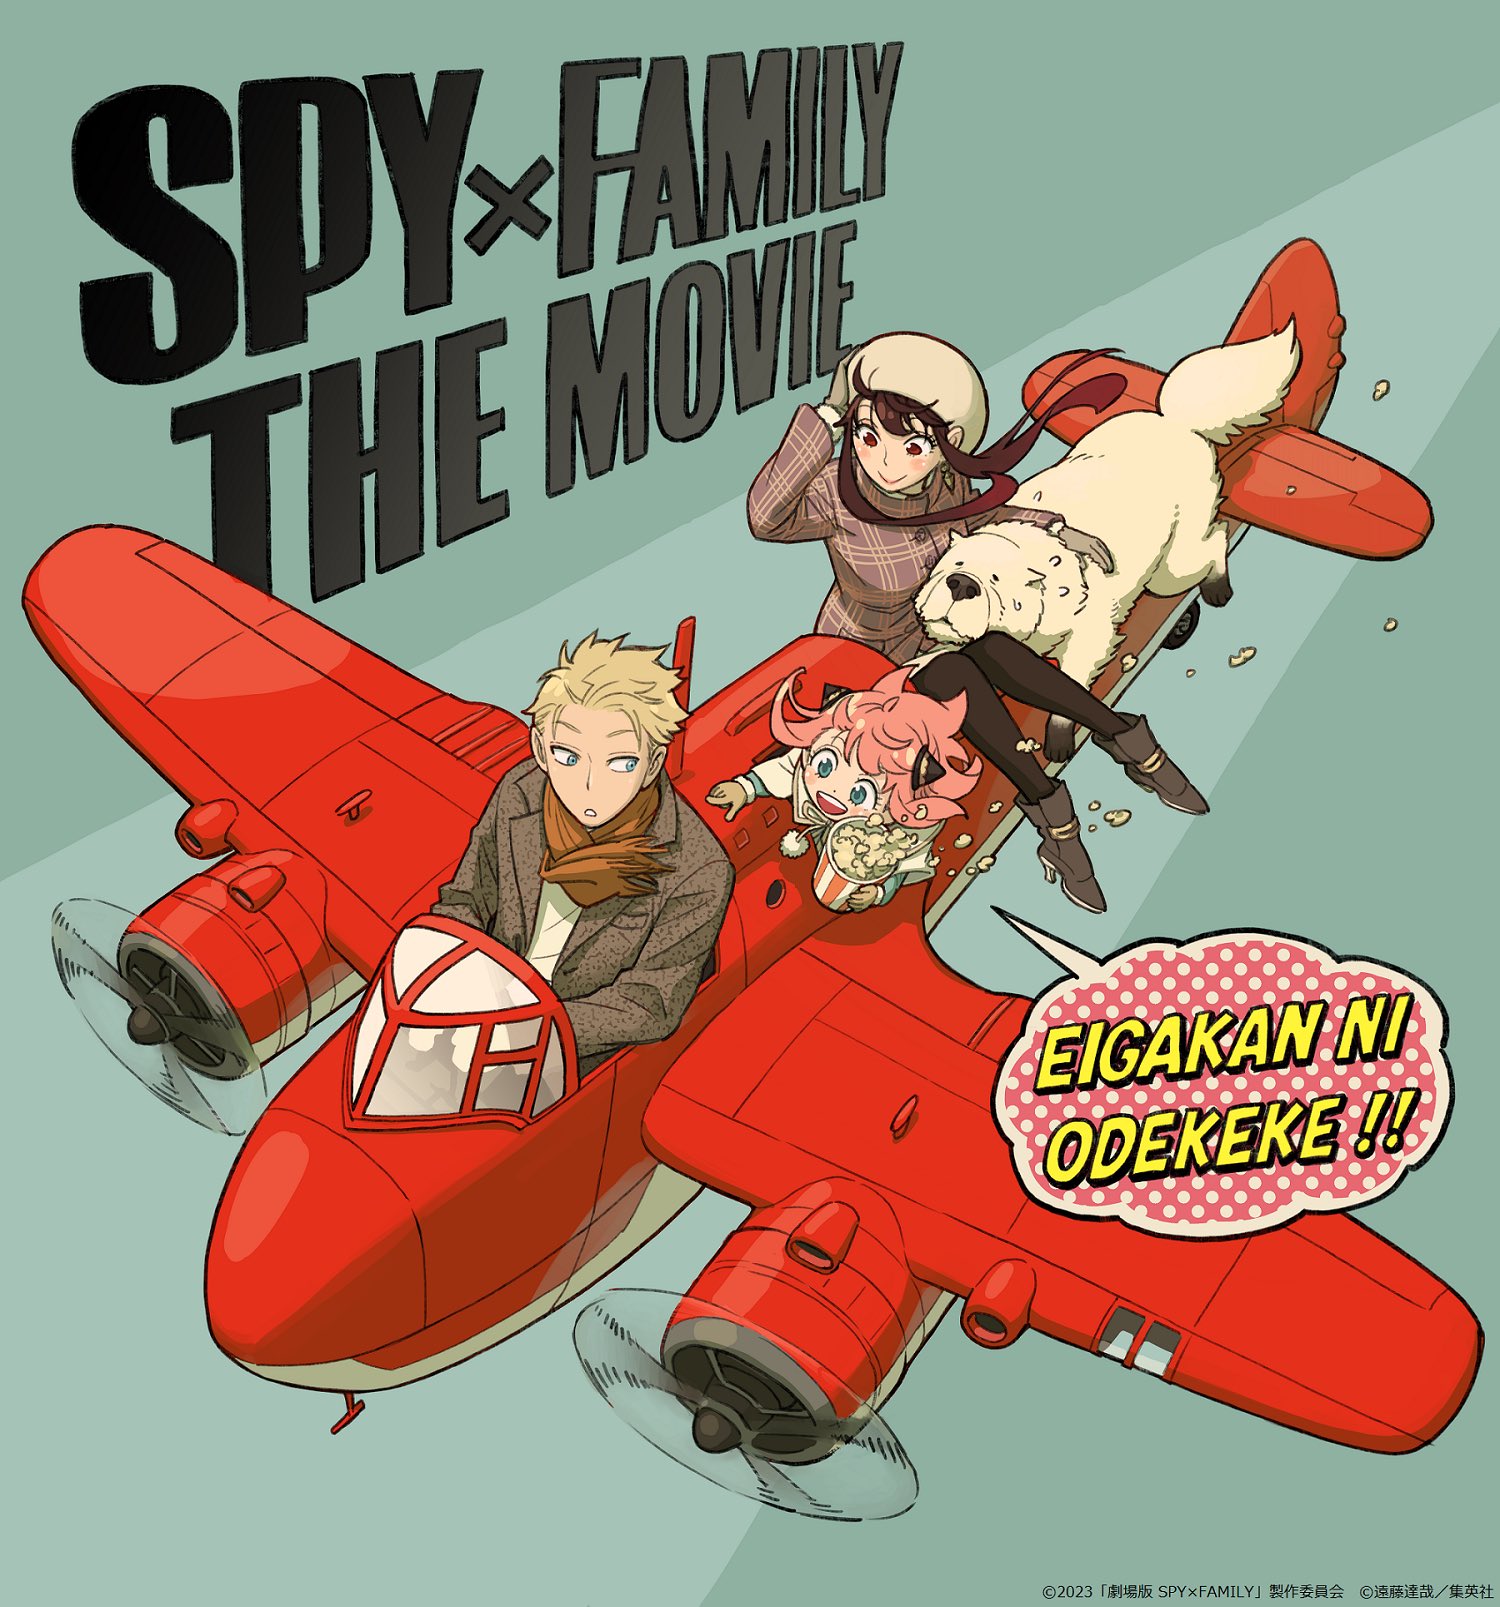 Spy x Family: História, personagens, onde assistir e mais